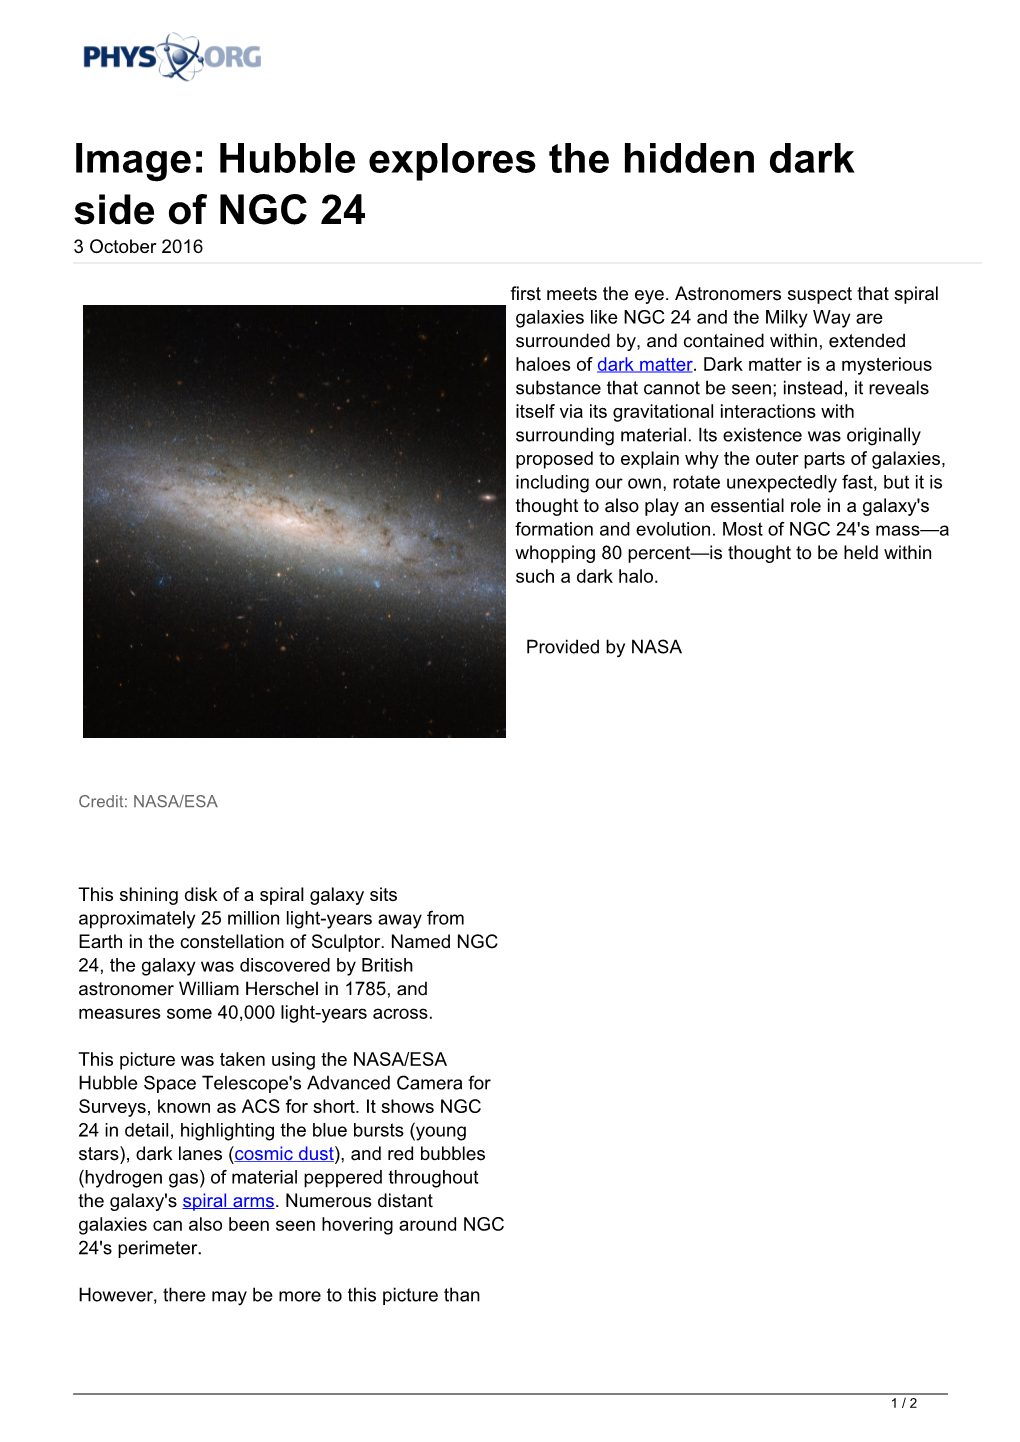 Hubble Explores the Hidden Dark Side of NGC 24 3 October 2016